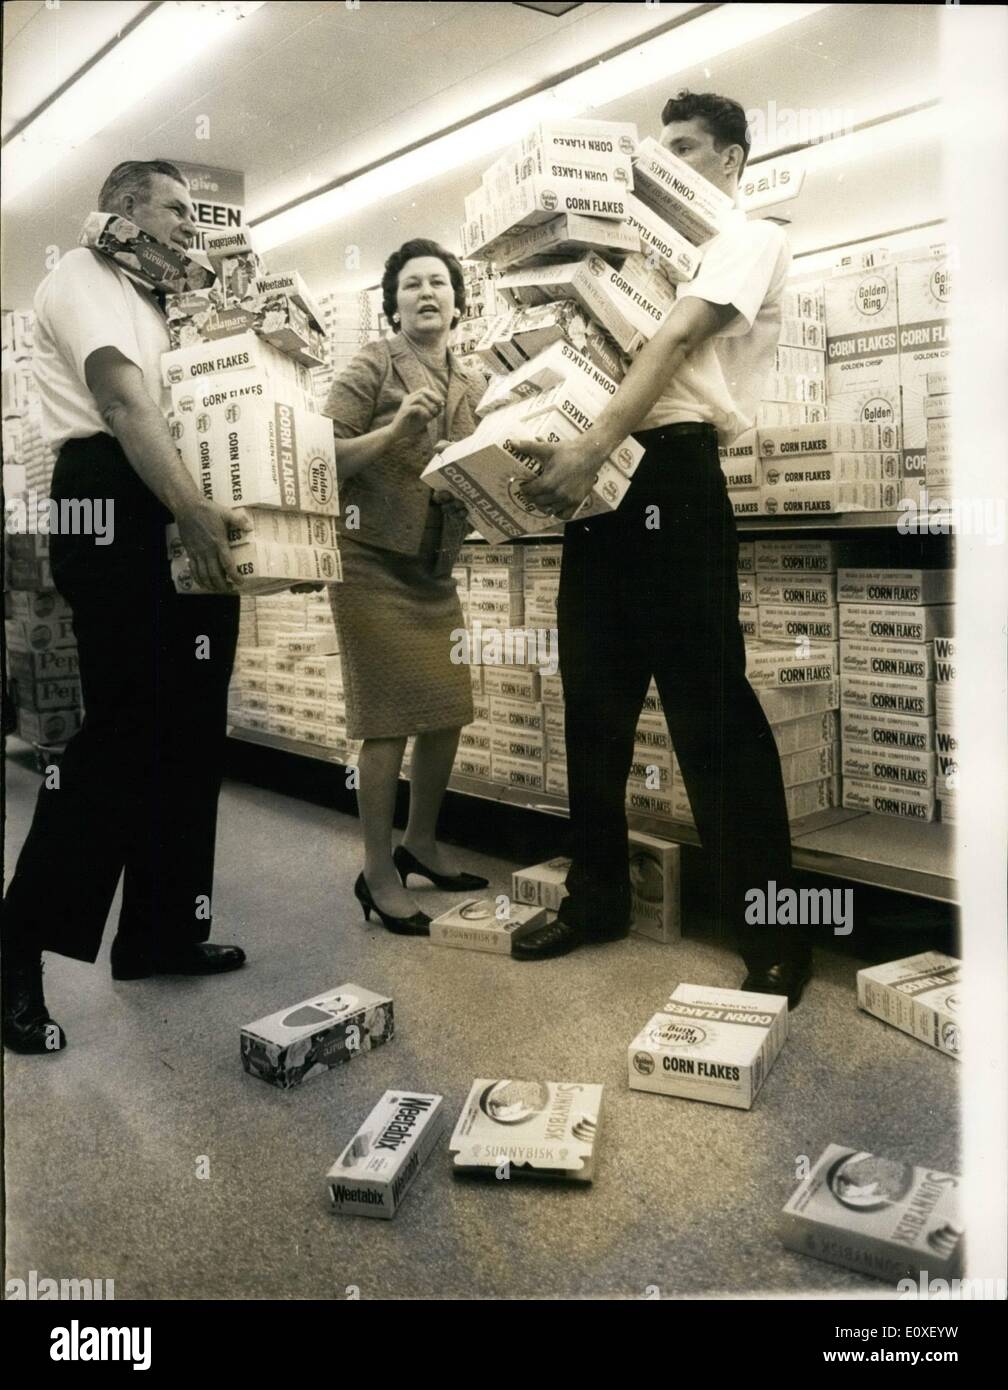 08 août, 1966 - L'ACHETEUR LE PLUS RAPIDE DU MONDE. La famille qui a tenu  le titre des plus rapides du monde, les consommateurs sont en  Grande-Bretagne. Ce sont M. et Mme.